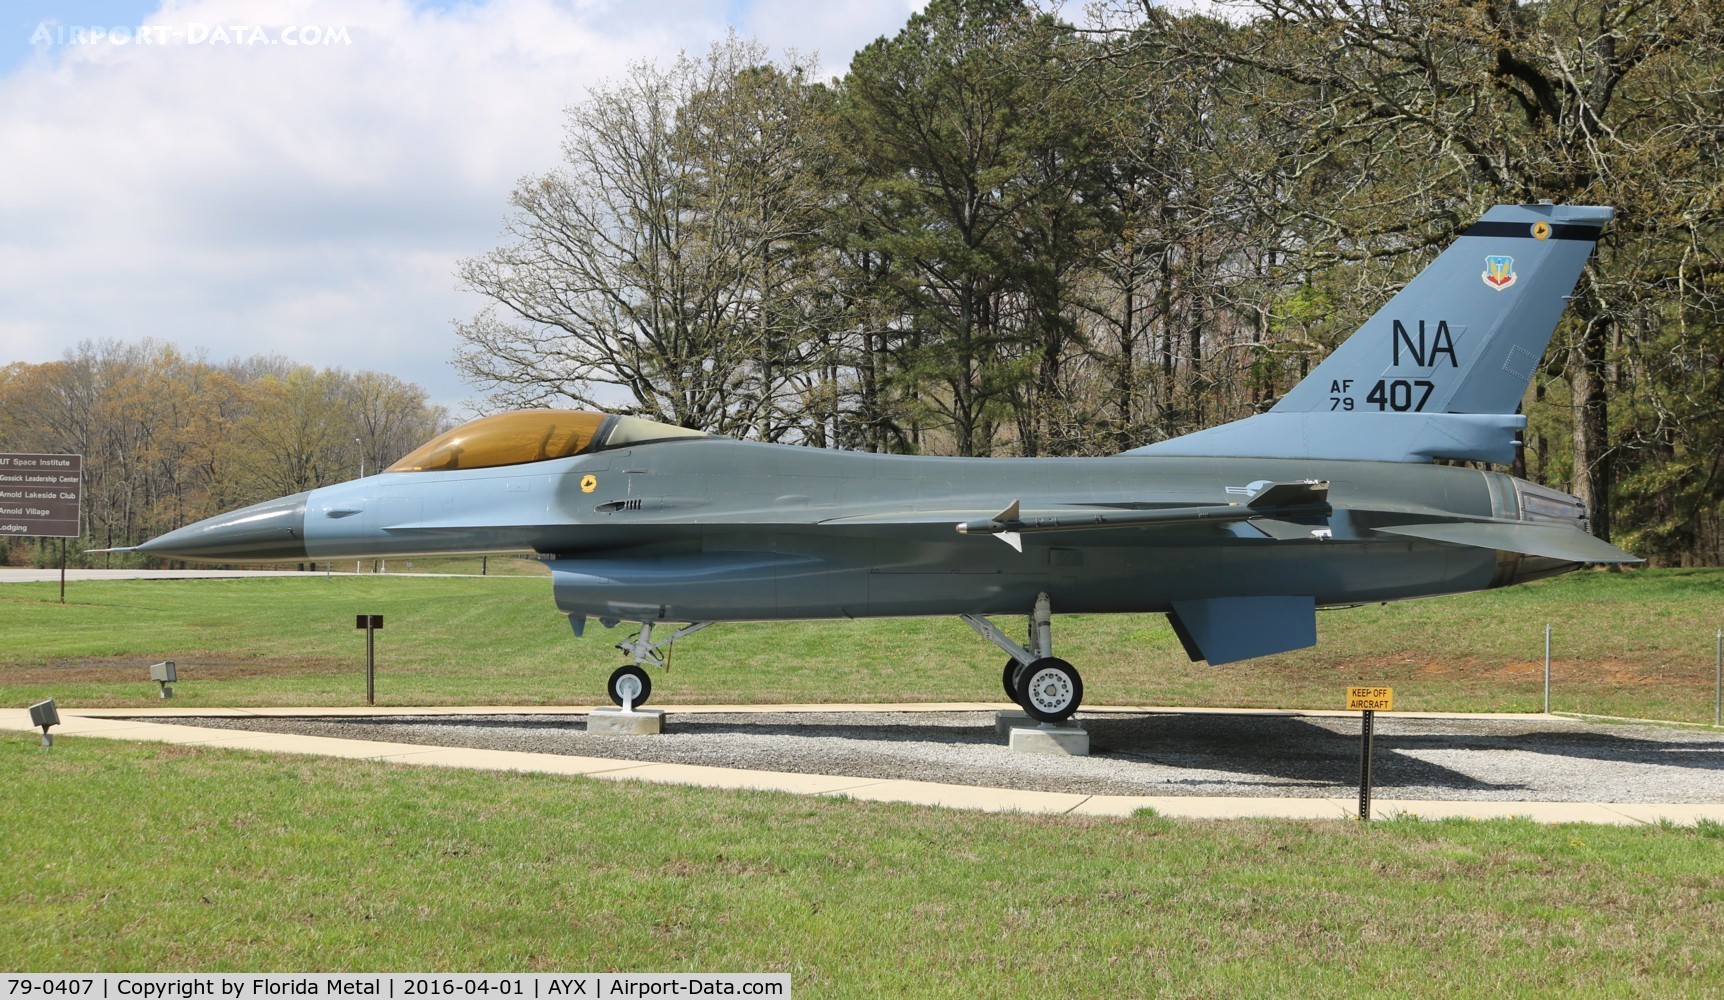 79-0407, 1979 General Dynamics F-16A Fighting Falcon C/N 61-192, F-16A